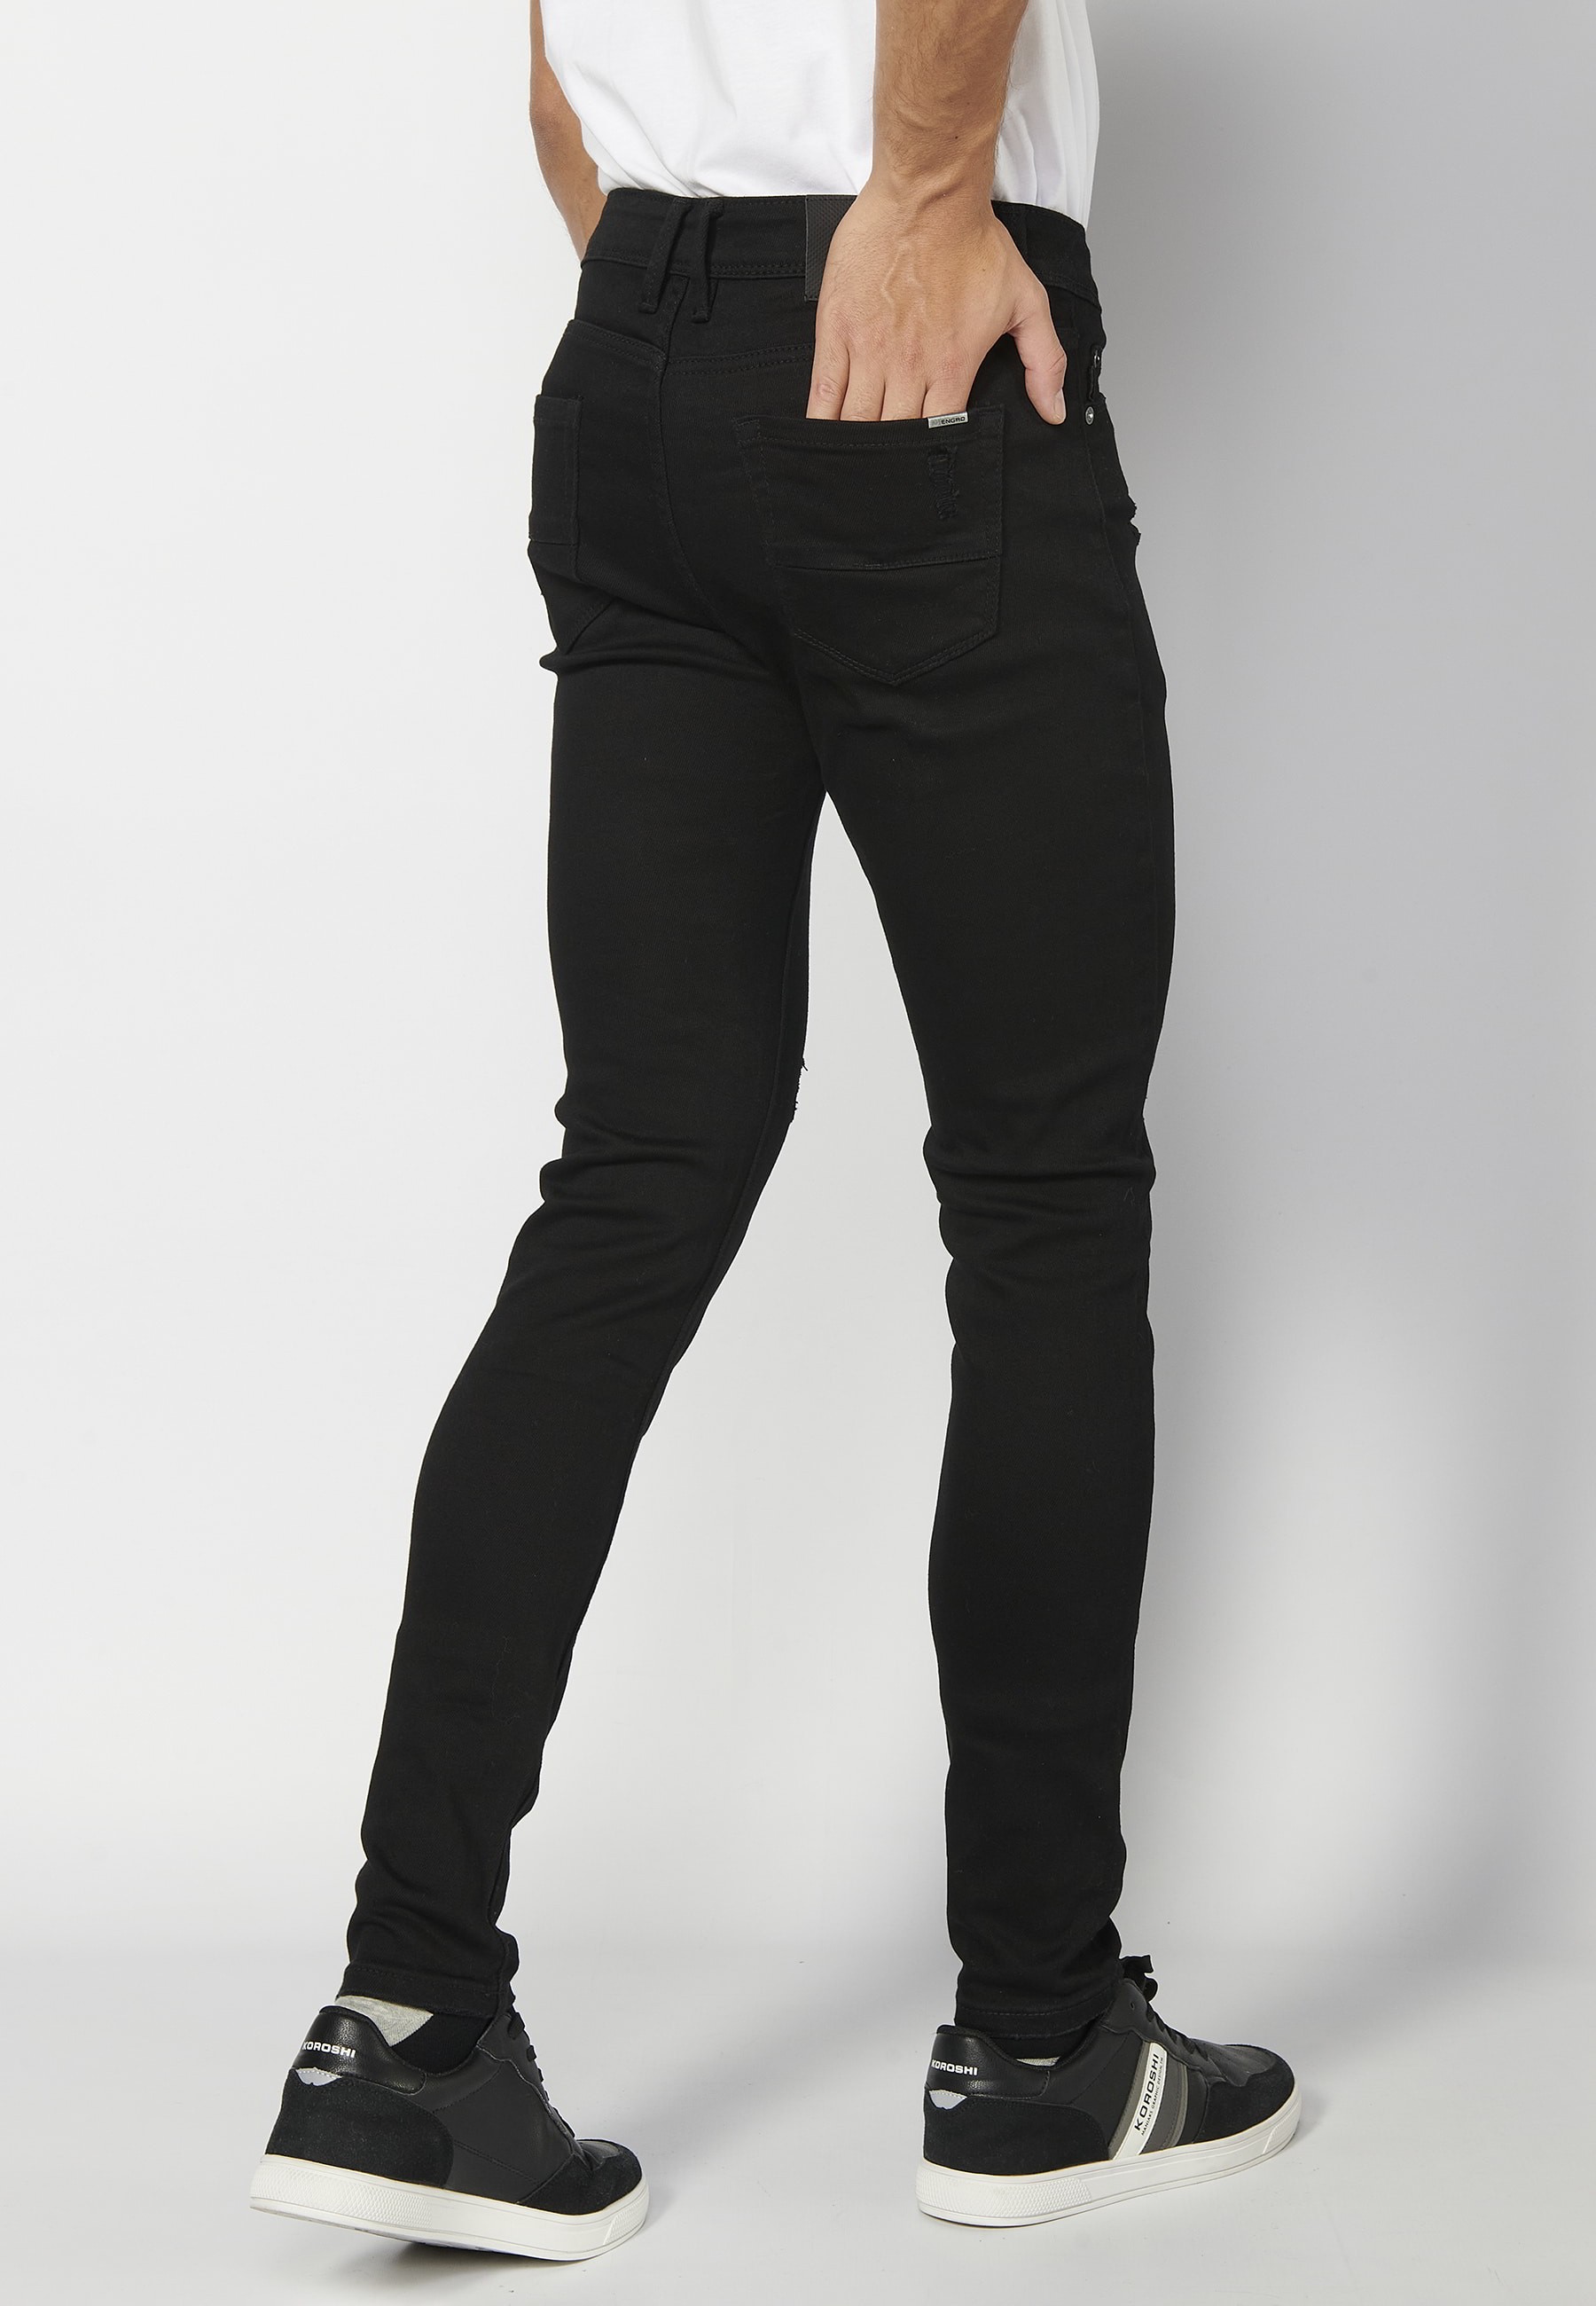 Pantalons llargs super skinny, amb cinc butxaques, color Negre per a Home 5